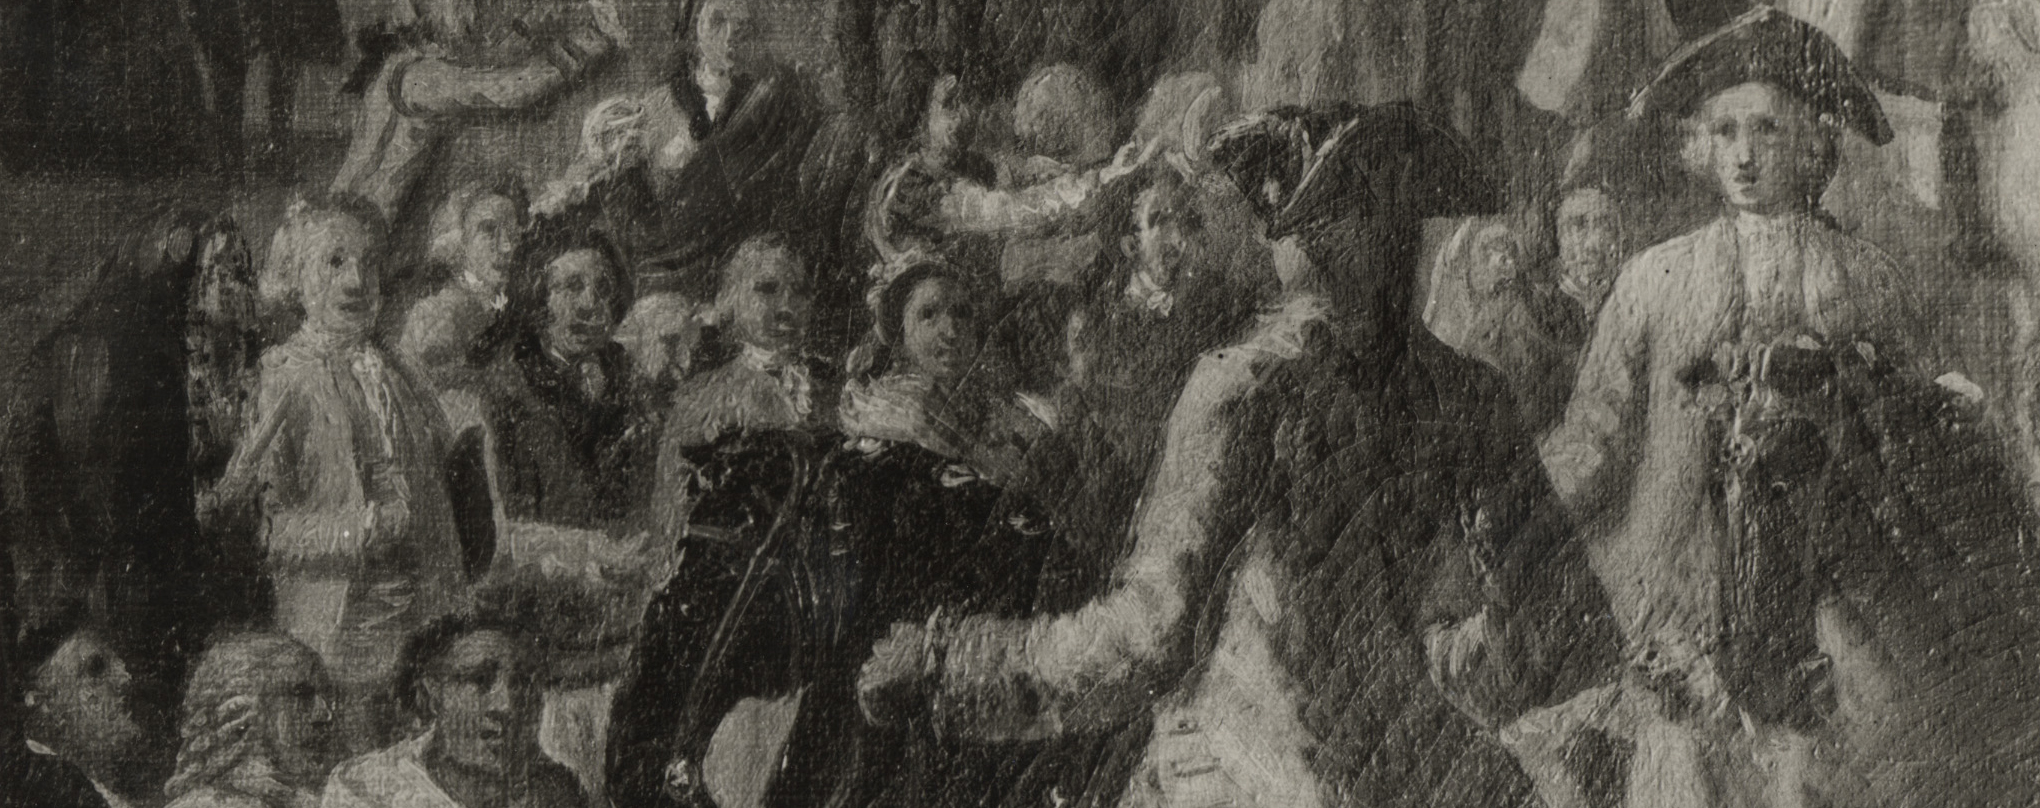 Proclamación de Carlos III en la Plaza Mayor [Material gráfico ]
Archivo Fotográfico Ruiz Vernacci. Luis Paret y Alcázar (1746-1799). S.l.. S.f